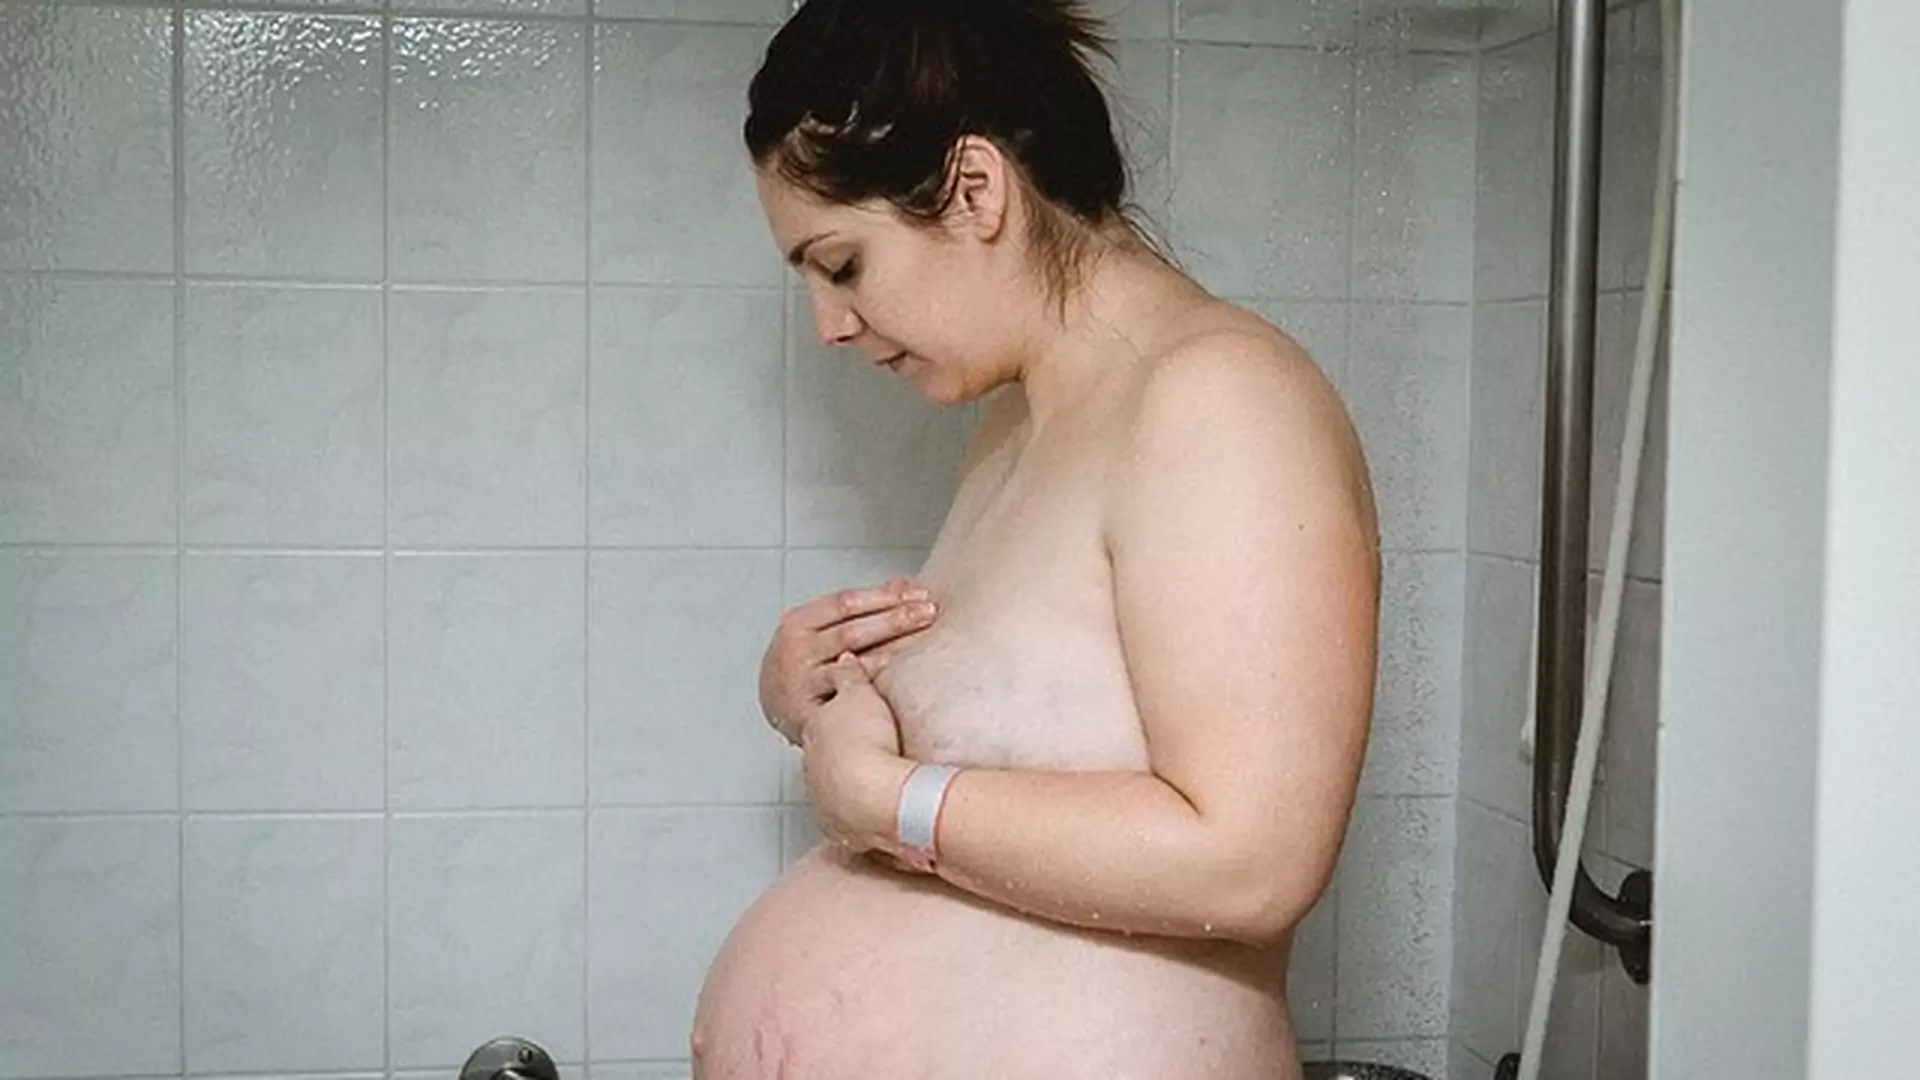 Po porodzie "patrzy w dół i nadal widzi ciążowy brzuch" - zdjęciem podbija serca mam